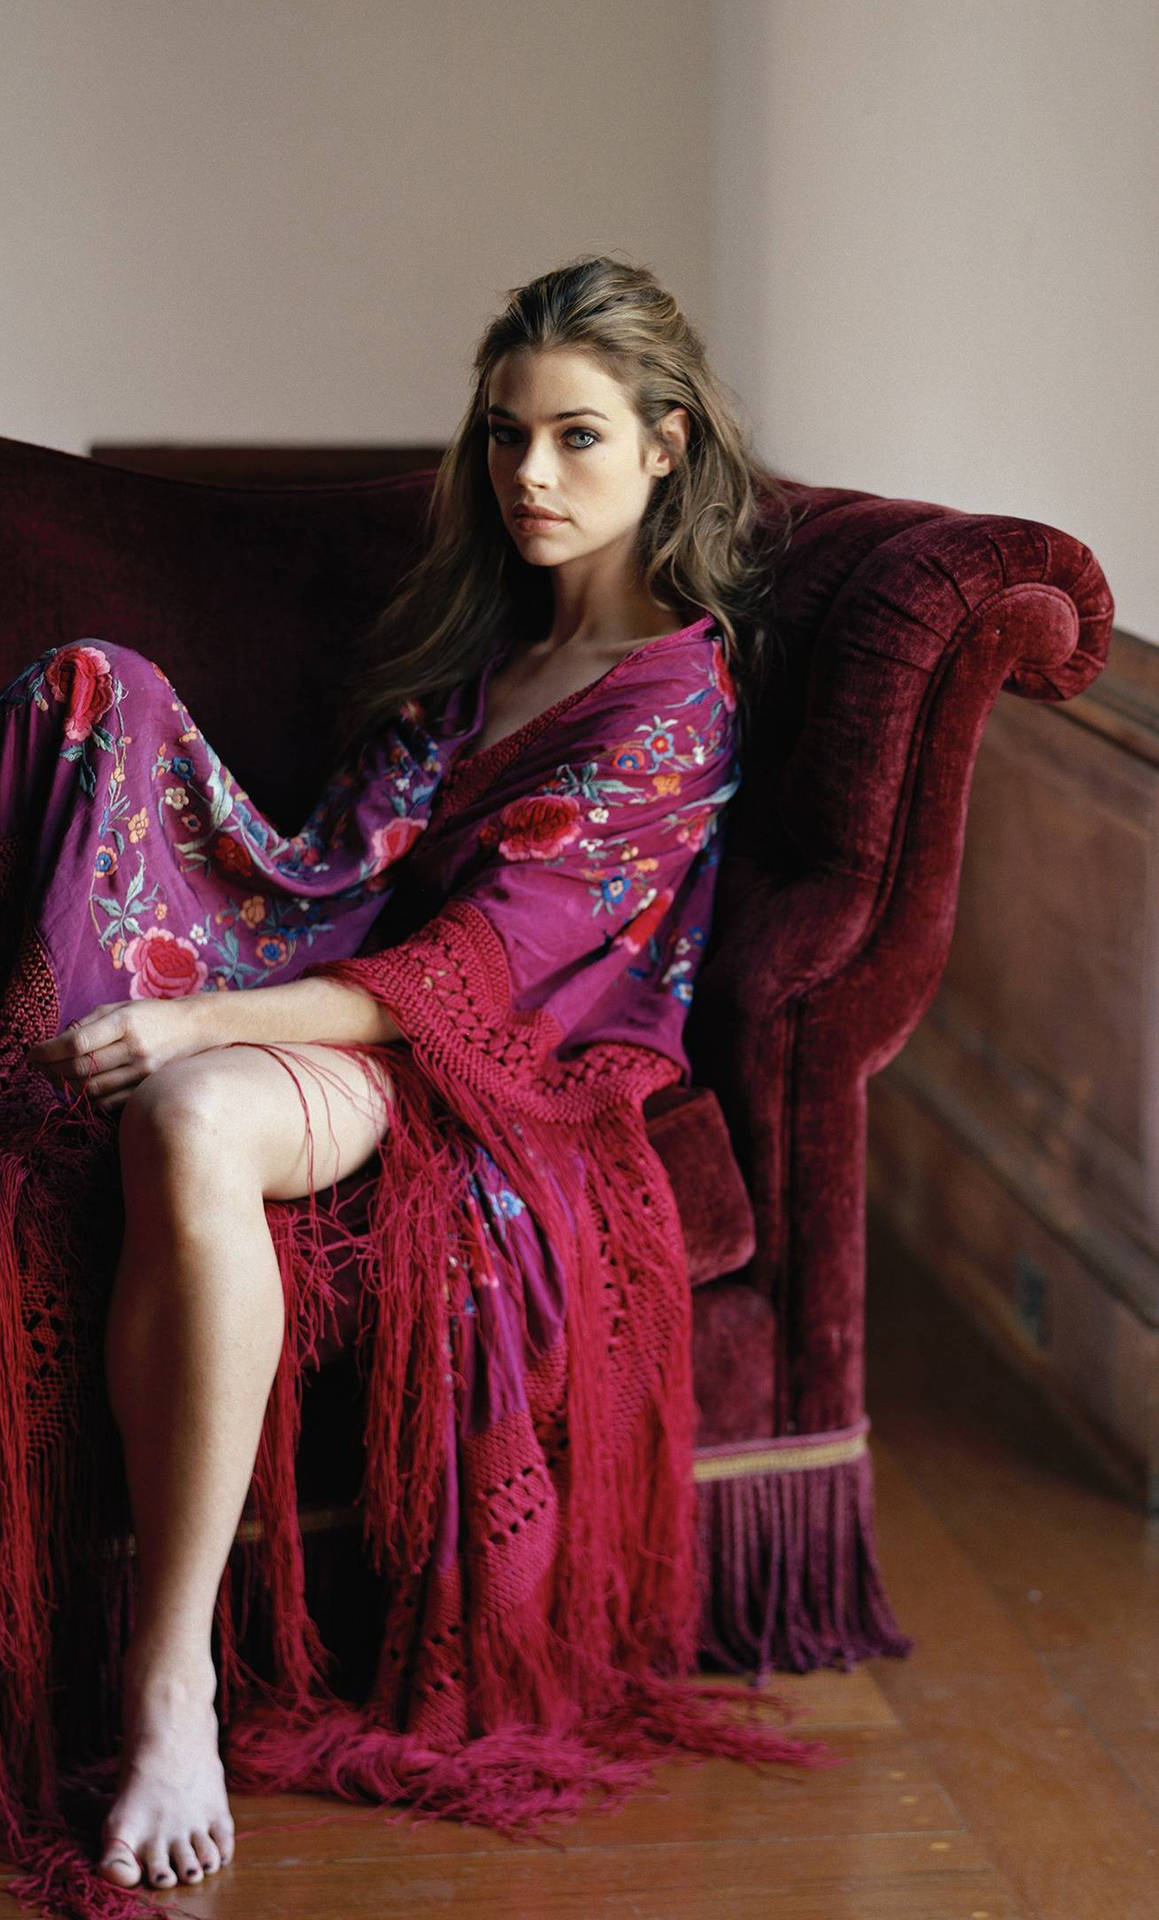 Modeloamericana Denise Richards Posando En Un Sofá De Terciopelo. Fondo de pantalla